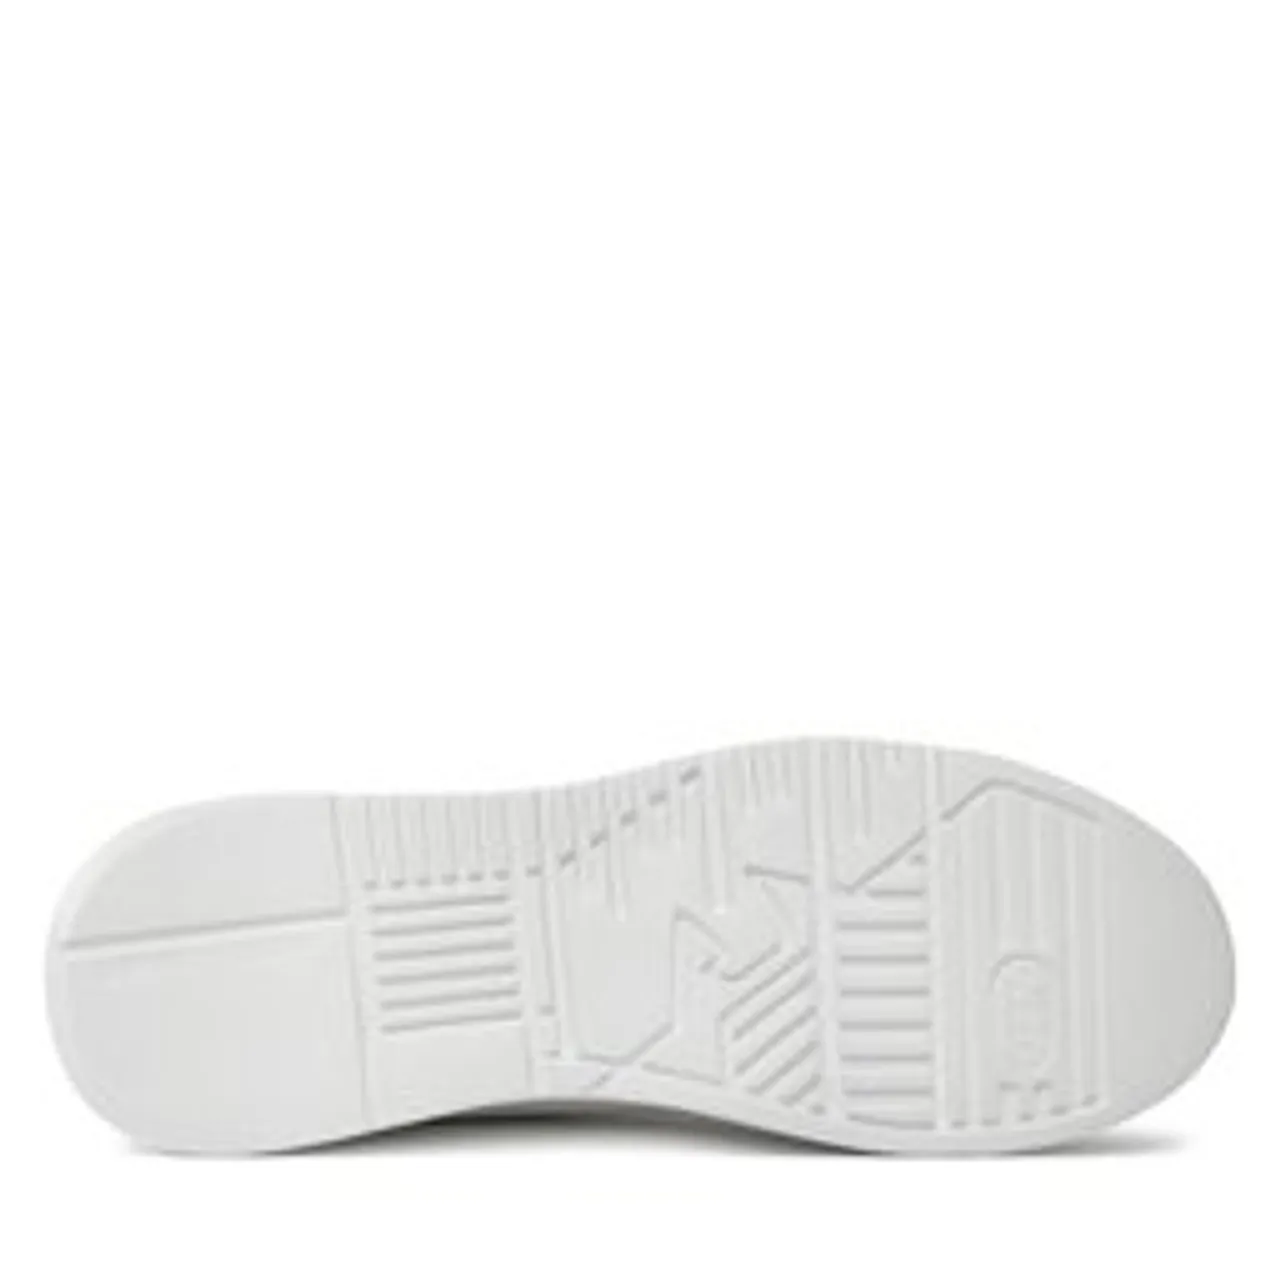 Sneakers Emporio Armani X3X024 XN388 R297 White/Lotus/Black